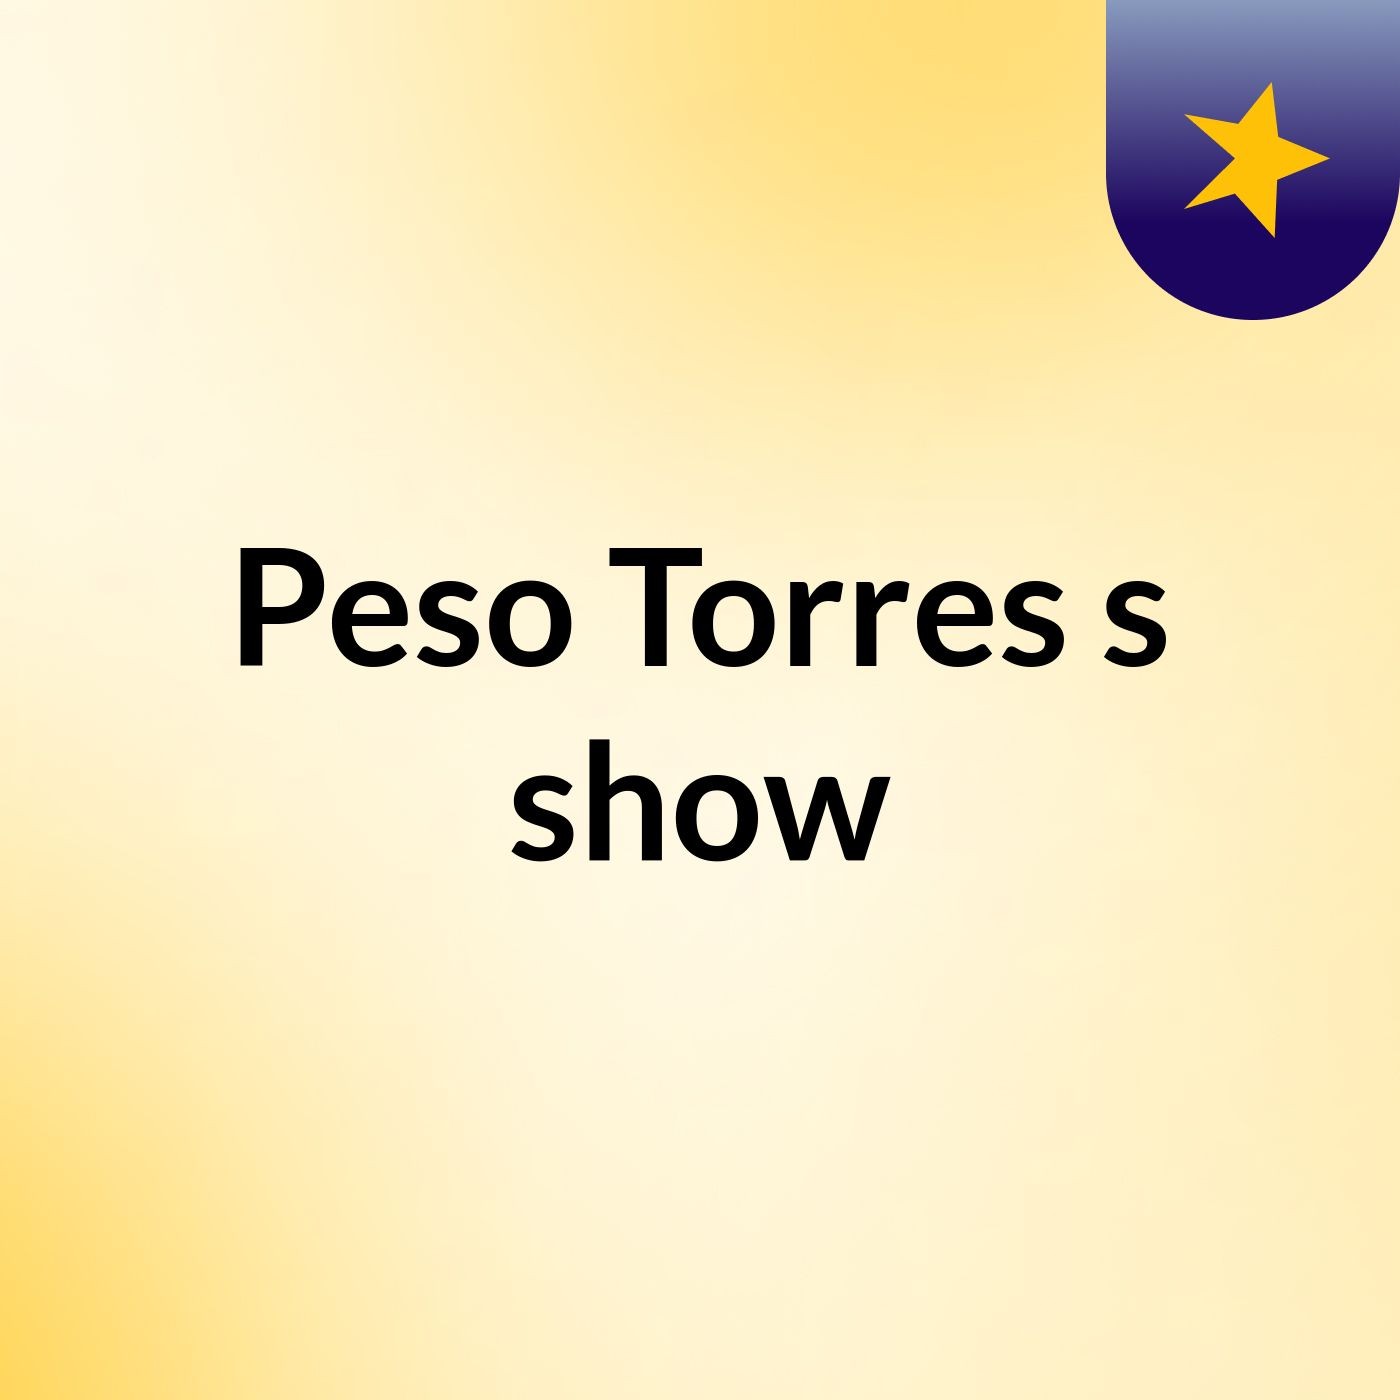 Peso Torres's show